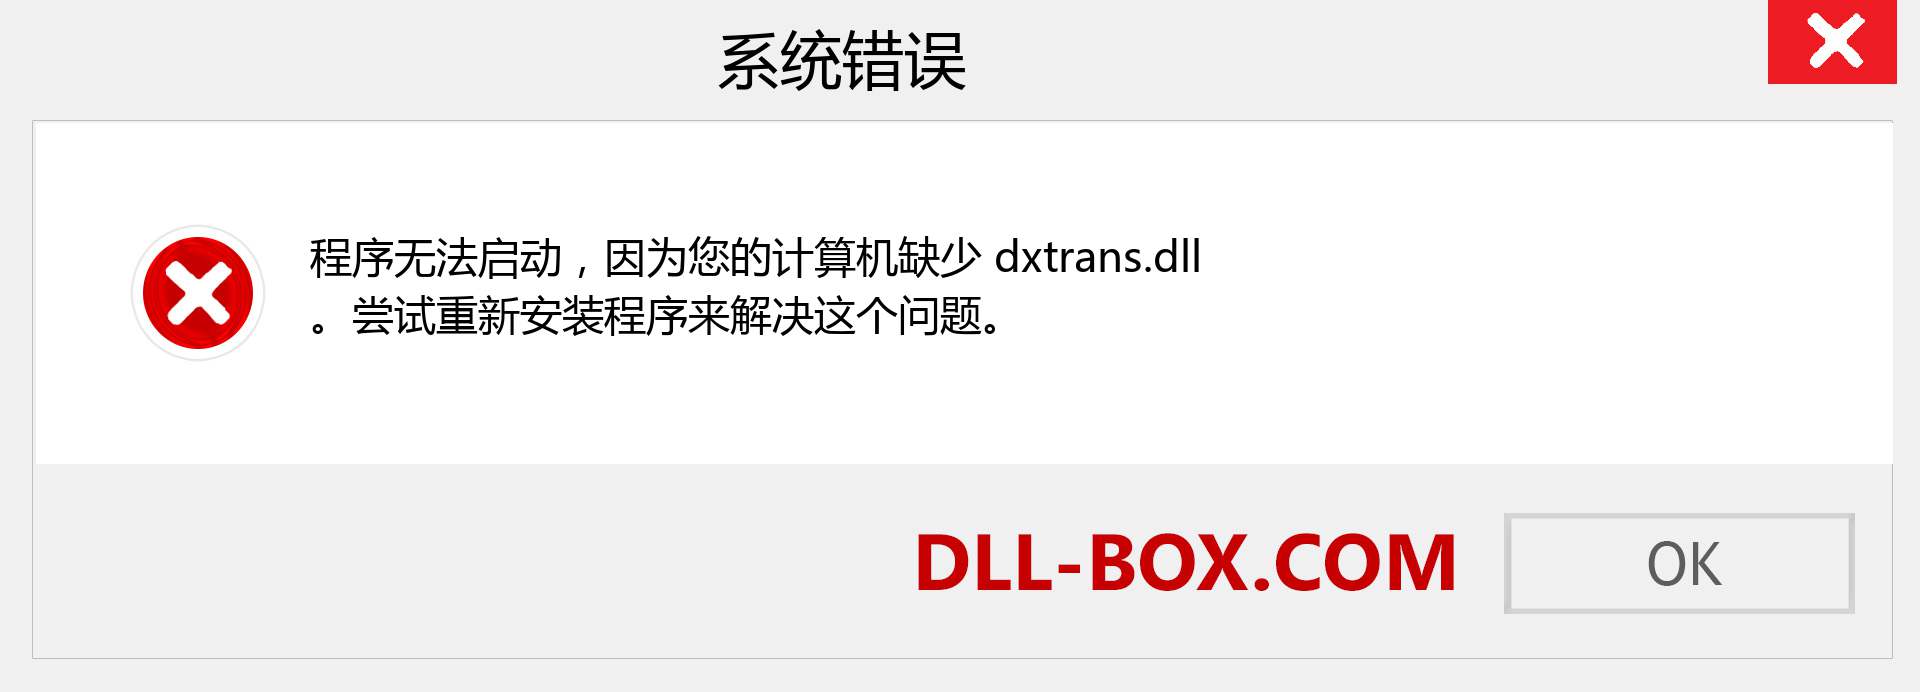 dxtrans.dll 文件丢失？。 适用于 Windows 7、8、10 的下载 - 修复 Windows、照片、图像上的 dxtrans dll 丢失错误